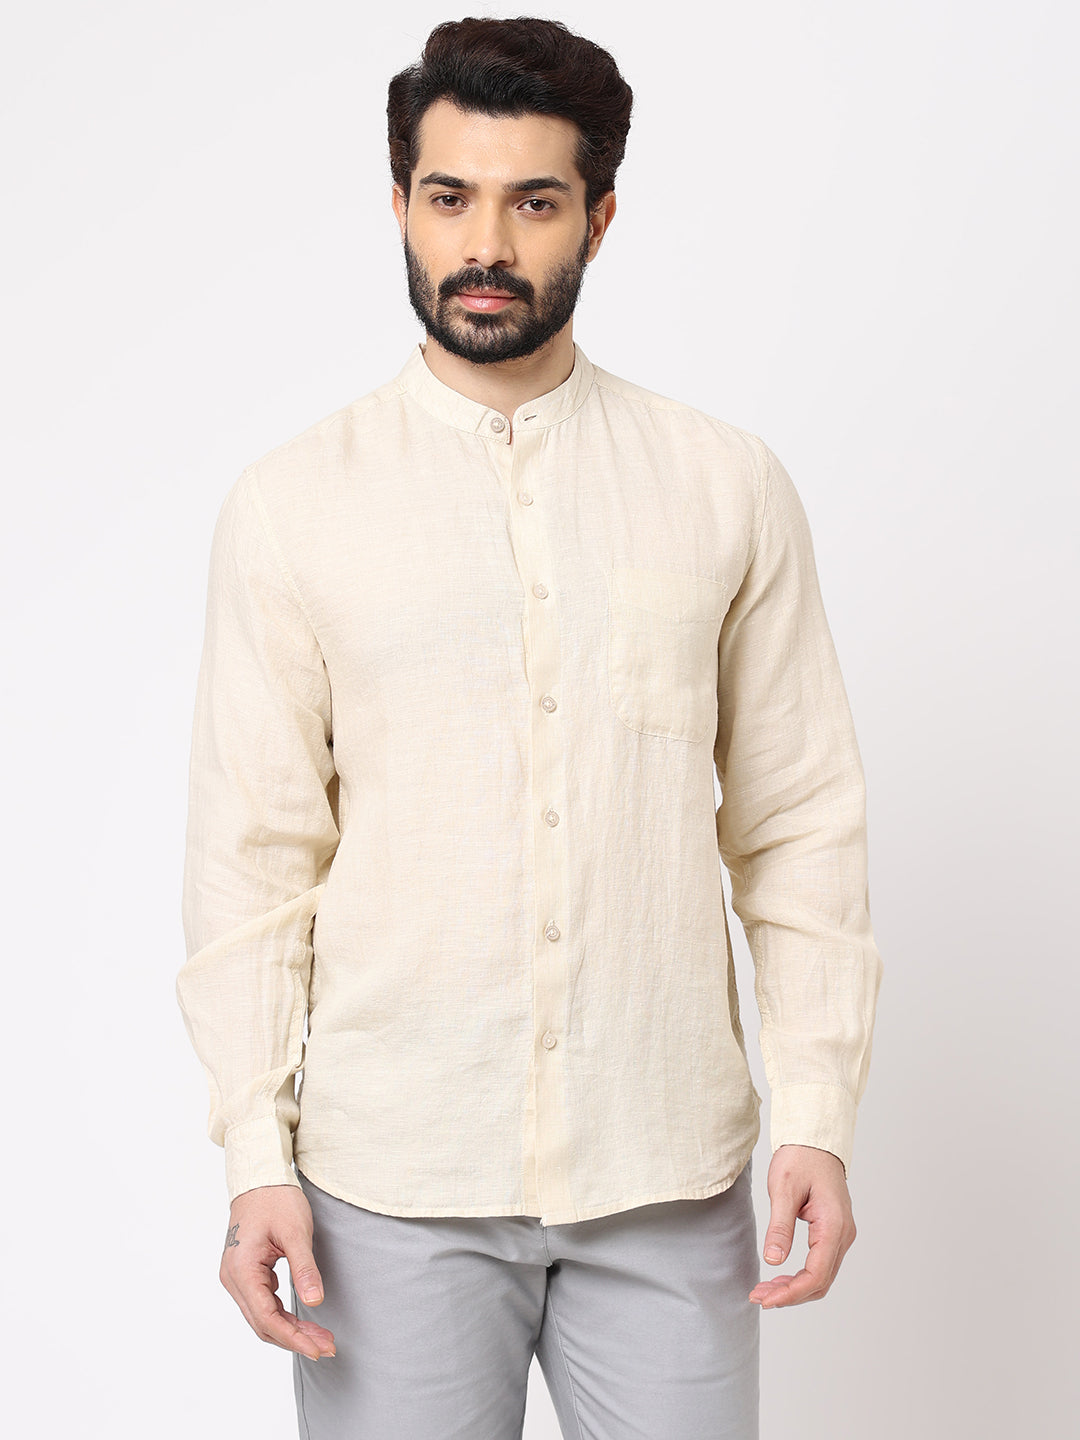 Men's Natural 100% Linen Long Sleeve Band Collar Regular Fit Shirt